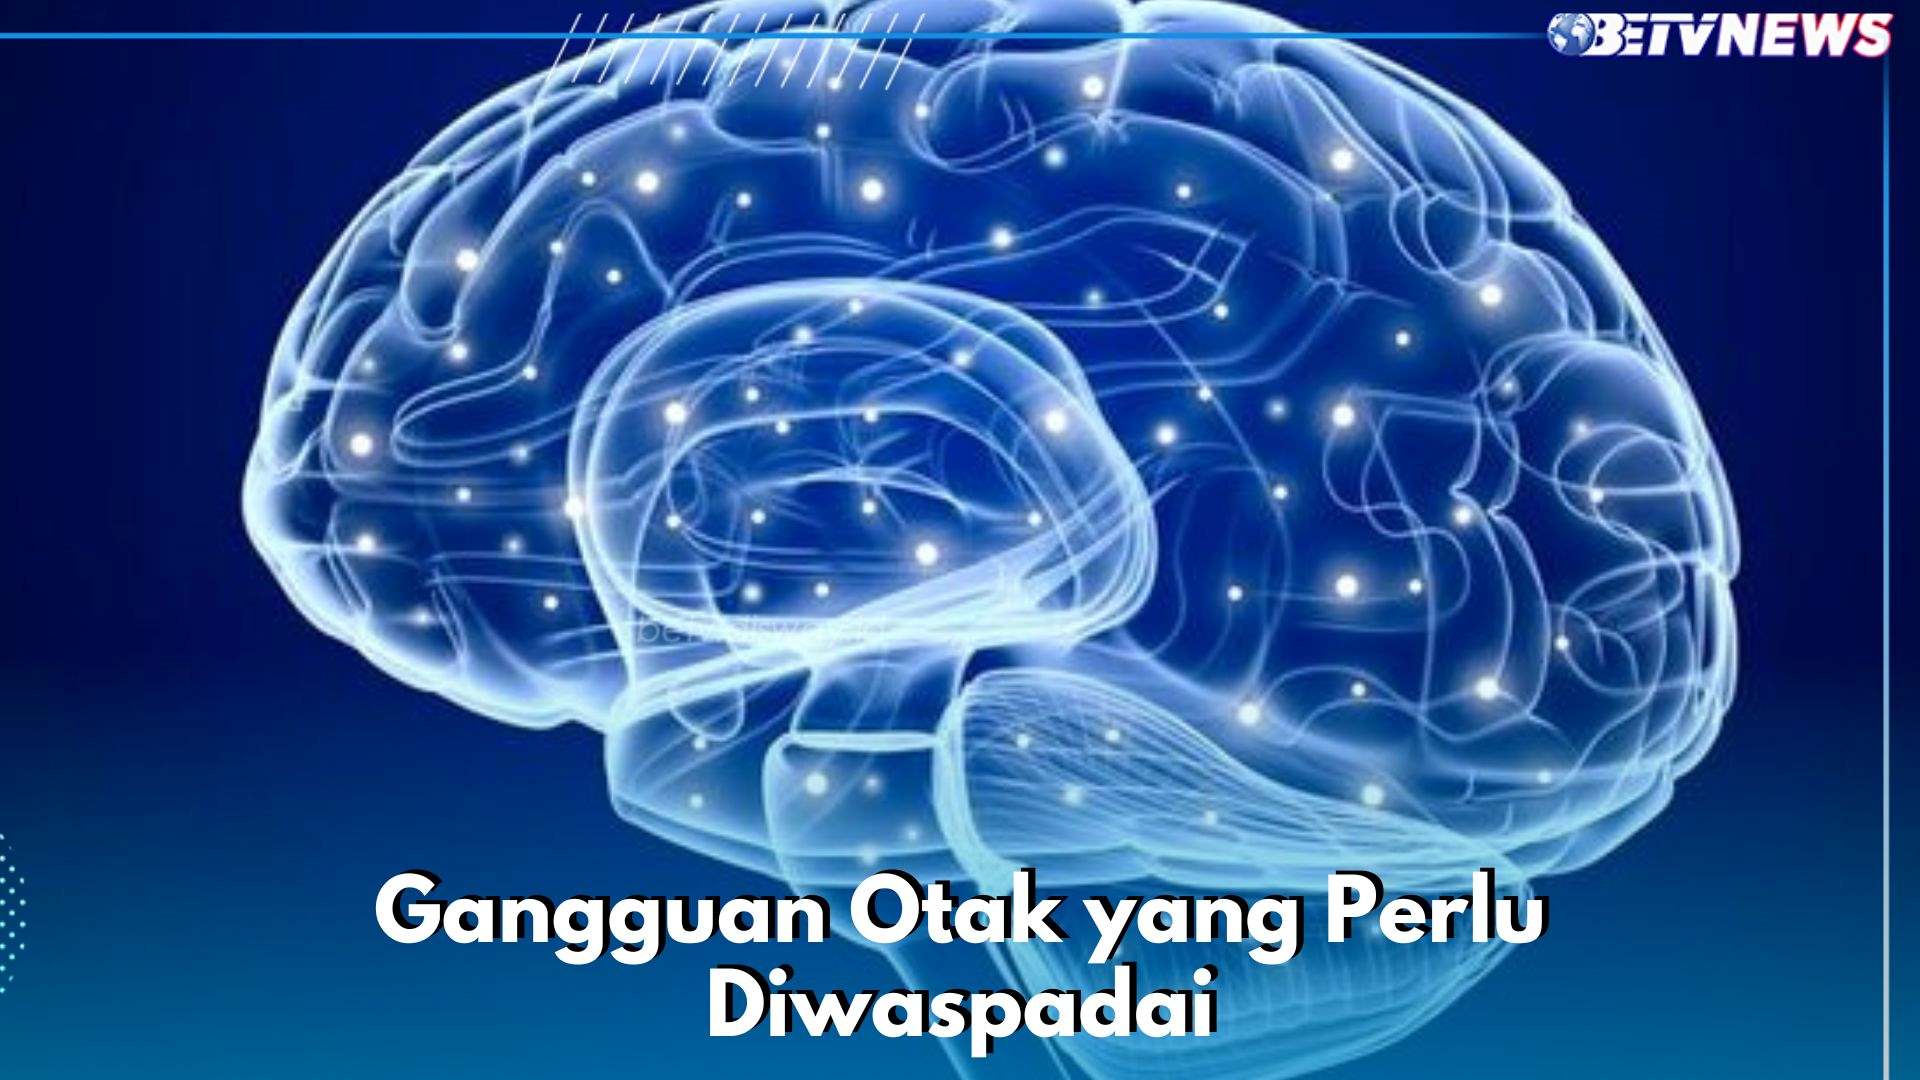 Hati-hati, Ini 6 Gangguan Otak yang Perlu Diwaspadai, Ada Epilepsi hingga Ataxia